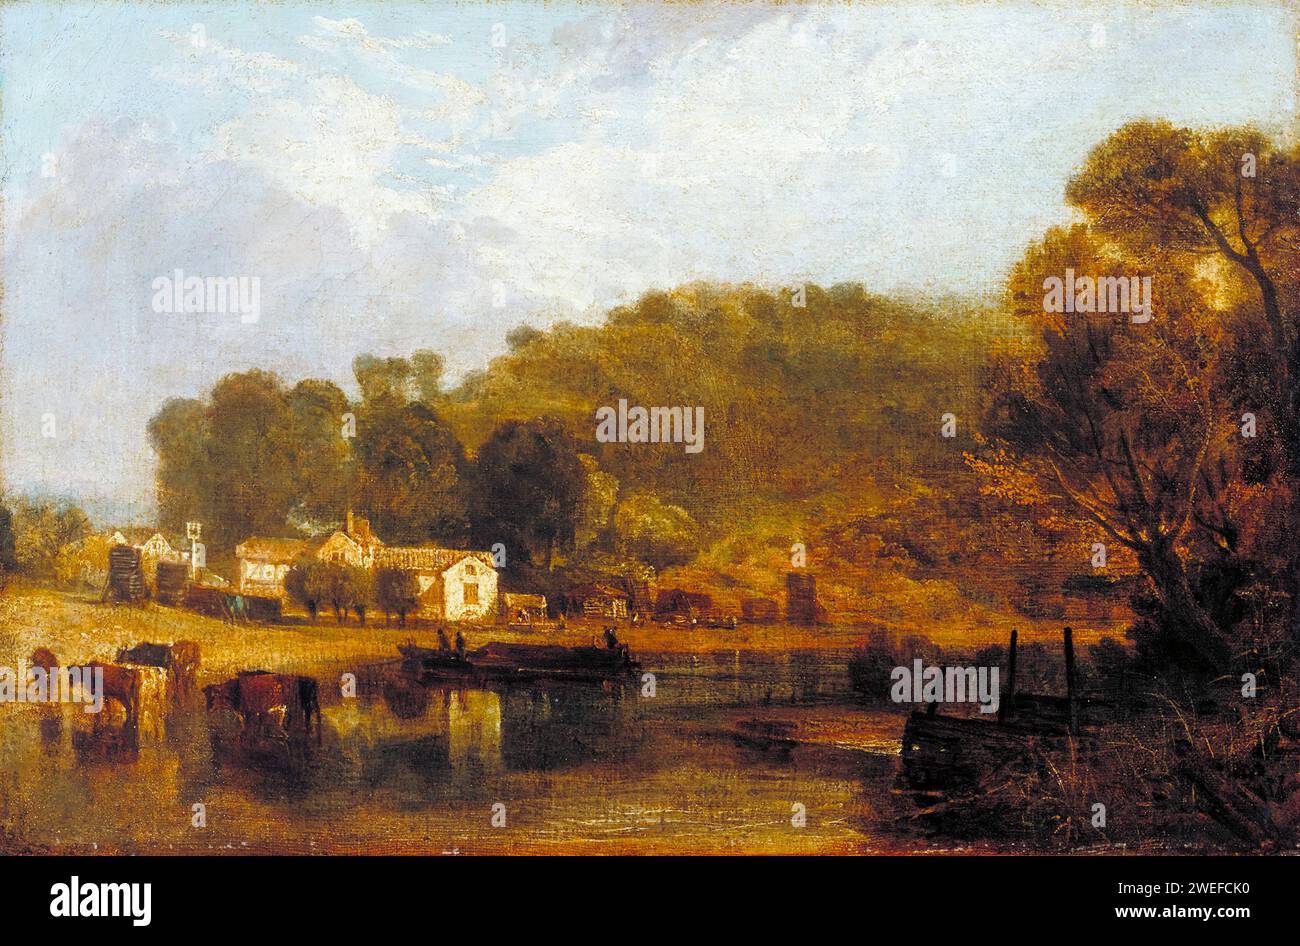 JMW Turner, Cliveden on Thames, Landschaftsmalerei in Öl auf Leinwand, 1807 Stockfoto